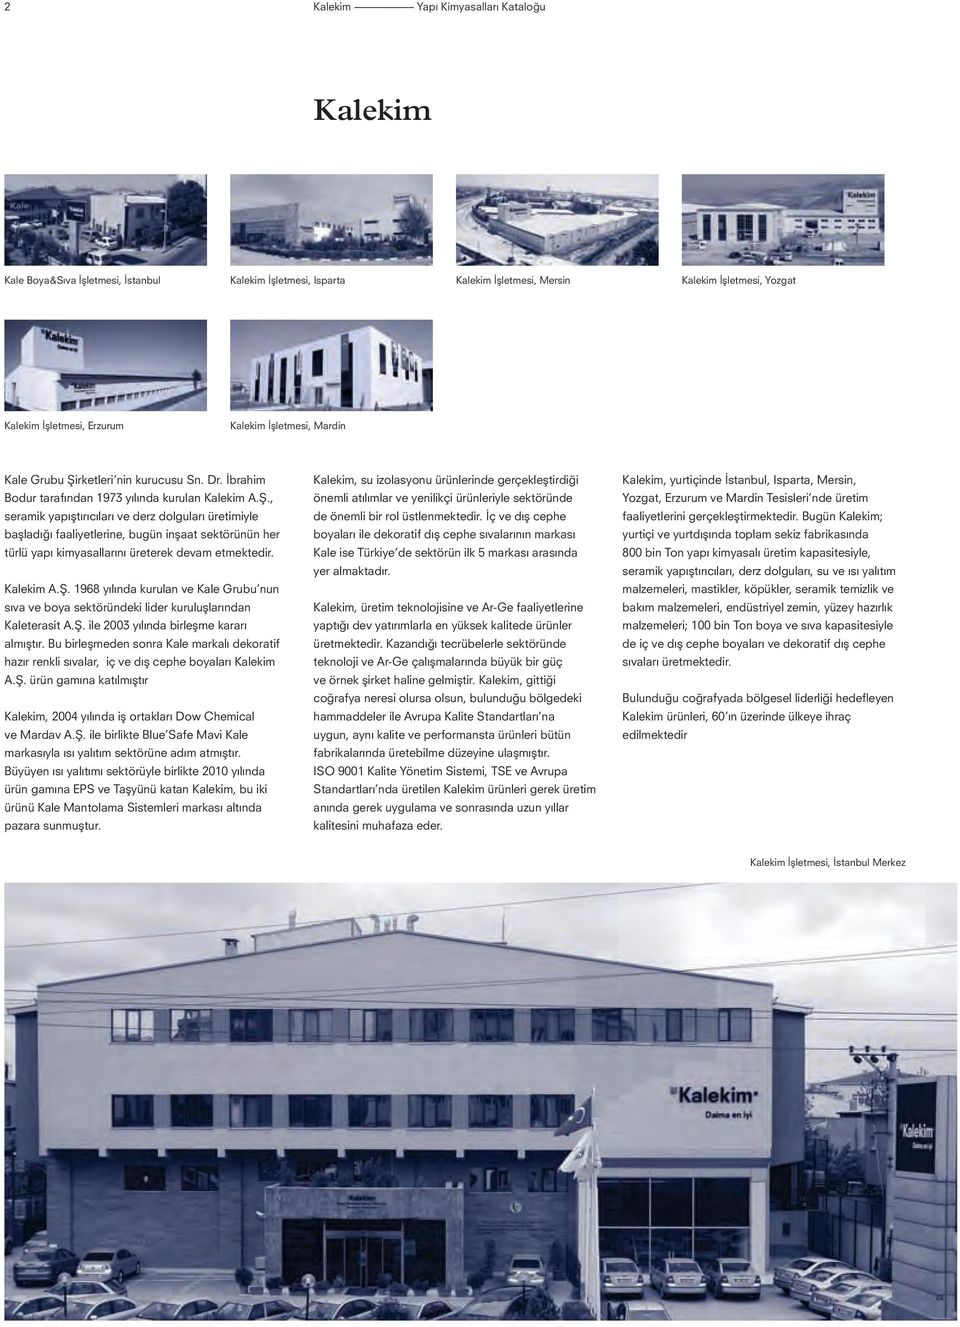 Kalekim A.Ş. 1968 yılında kurulan ve Kale Grubu nun sıva ve boya sektöründeki lider kuruluşlarından Kaleterasit A.Ş. ile 2003 yılında birleşme kararı almıştır.